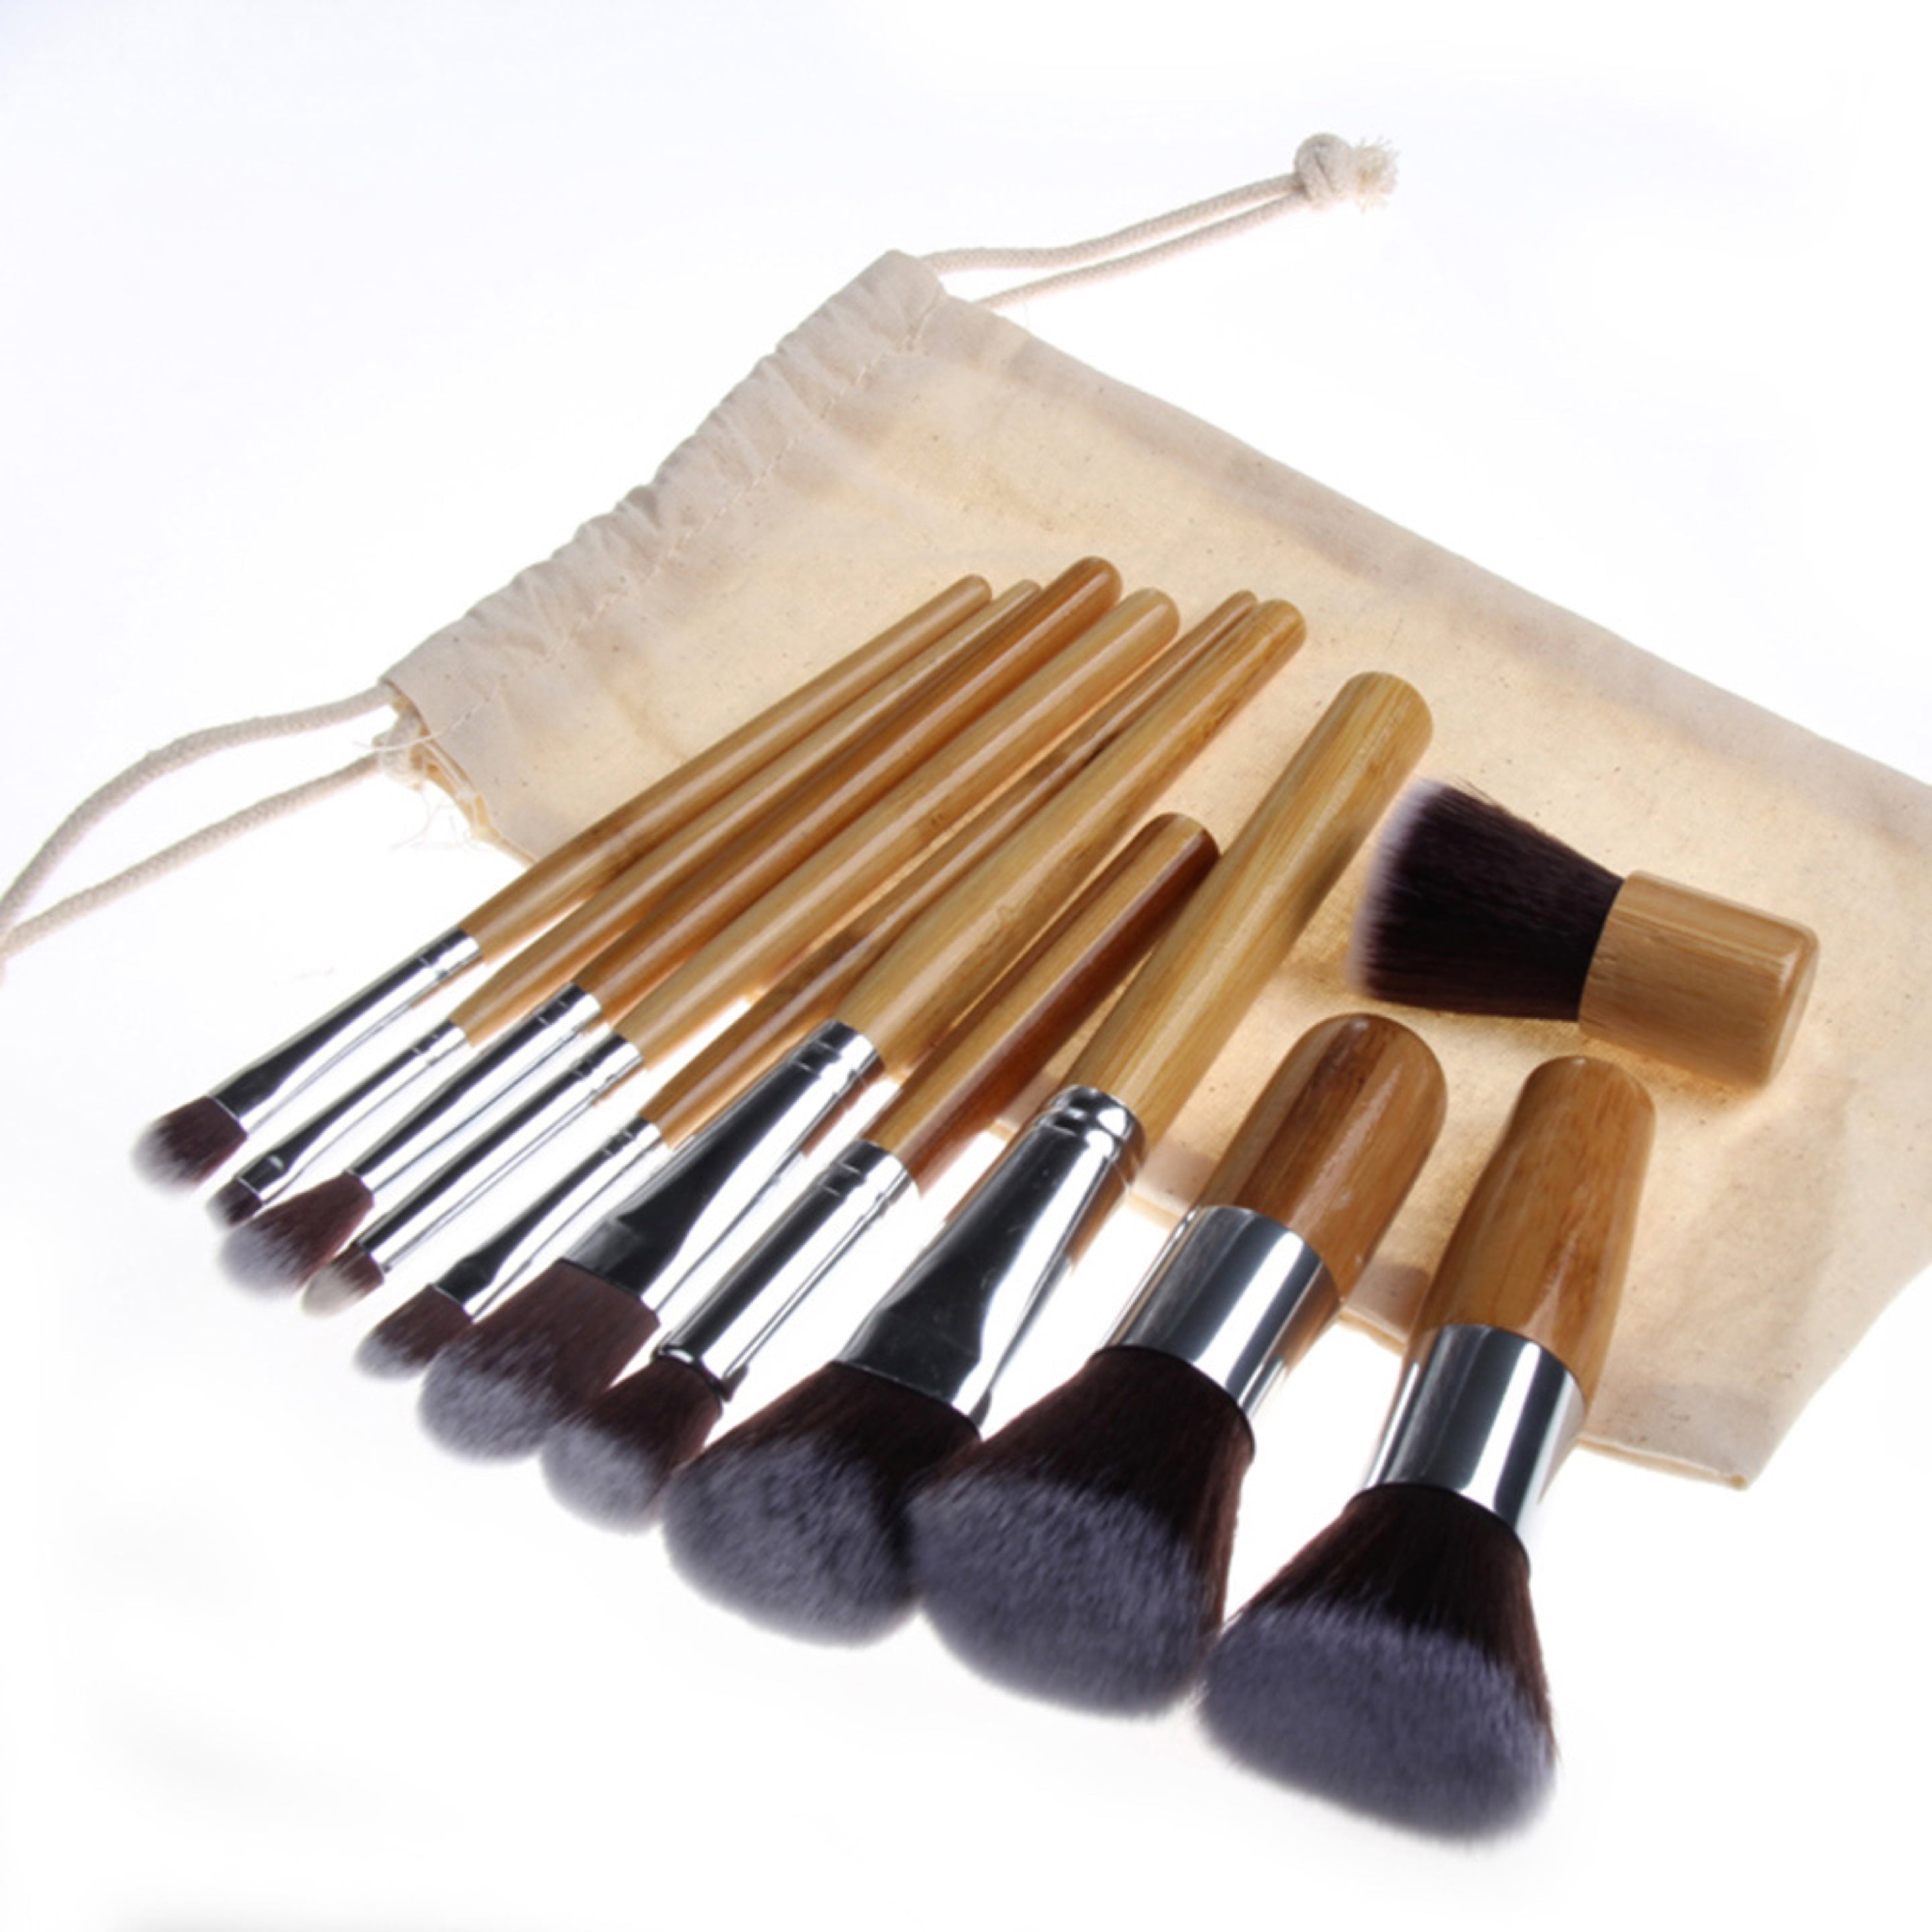 Lancôme 4-piece Makeup Brush Set with Bag - 20497480